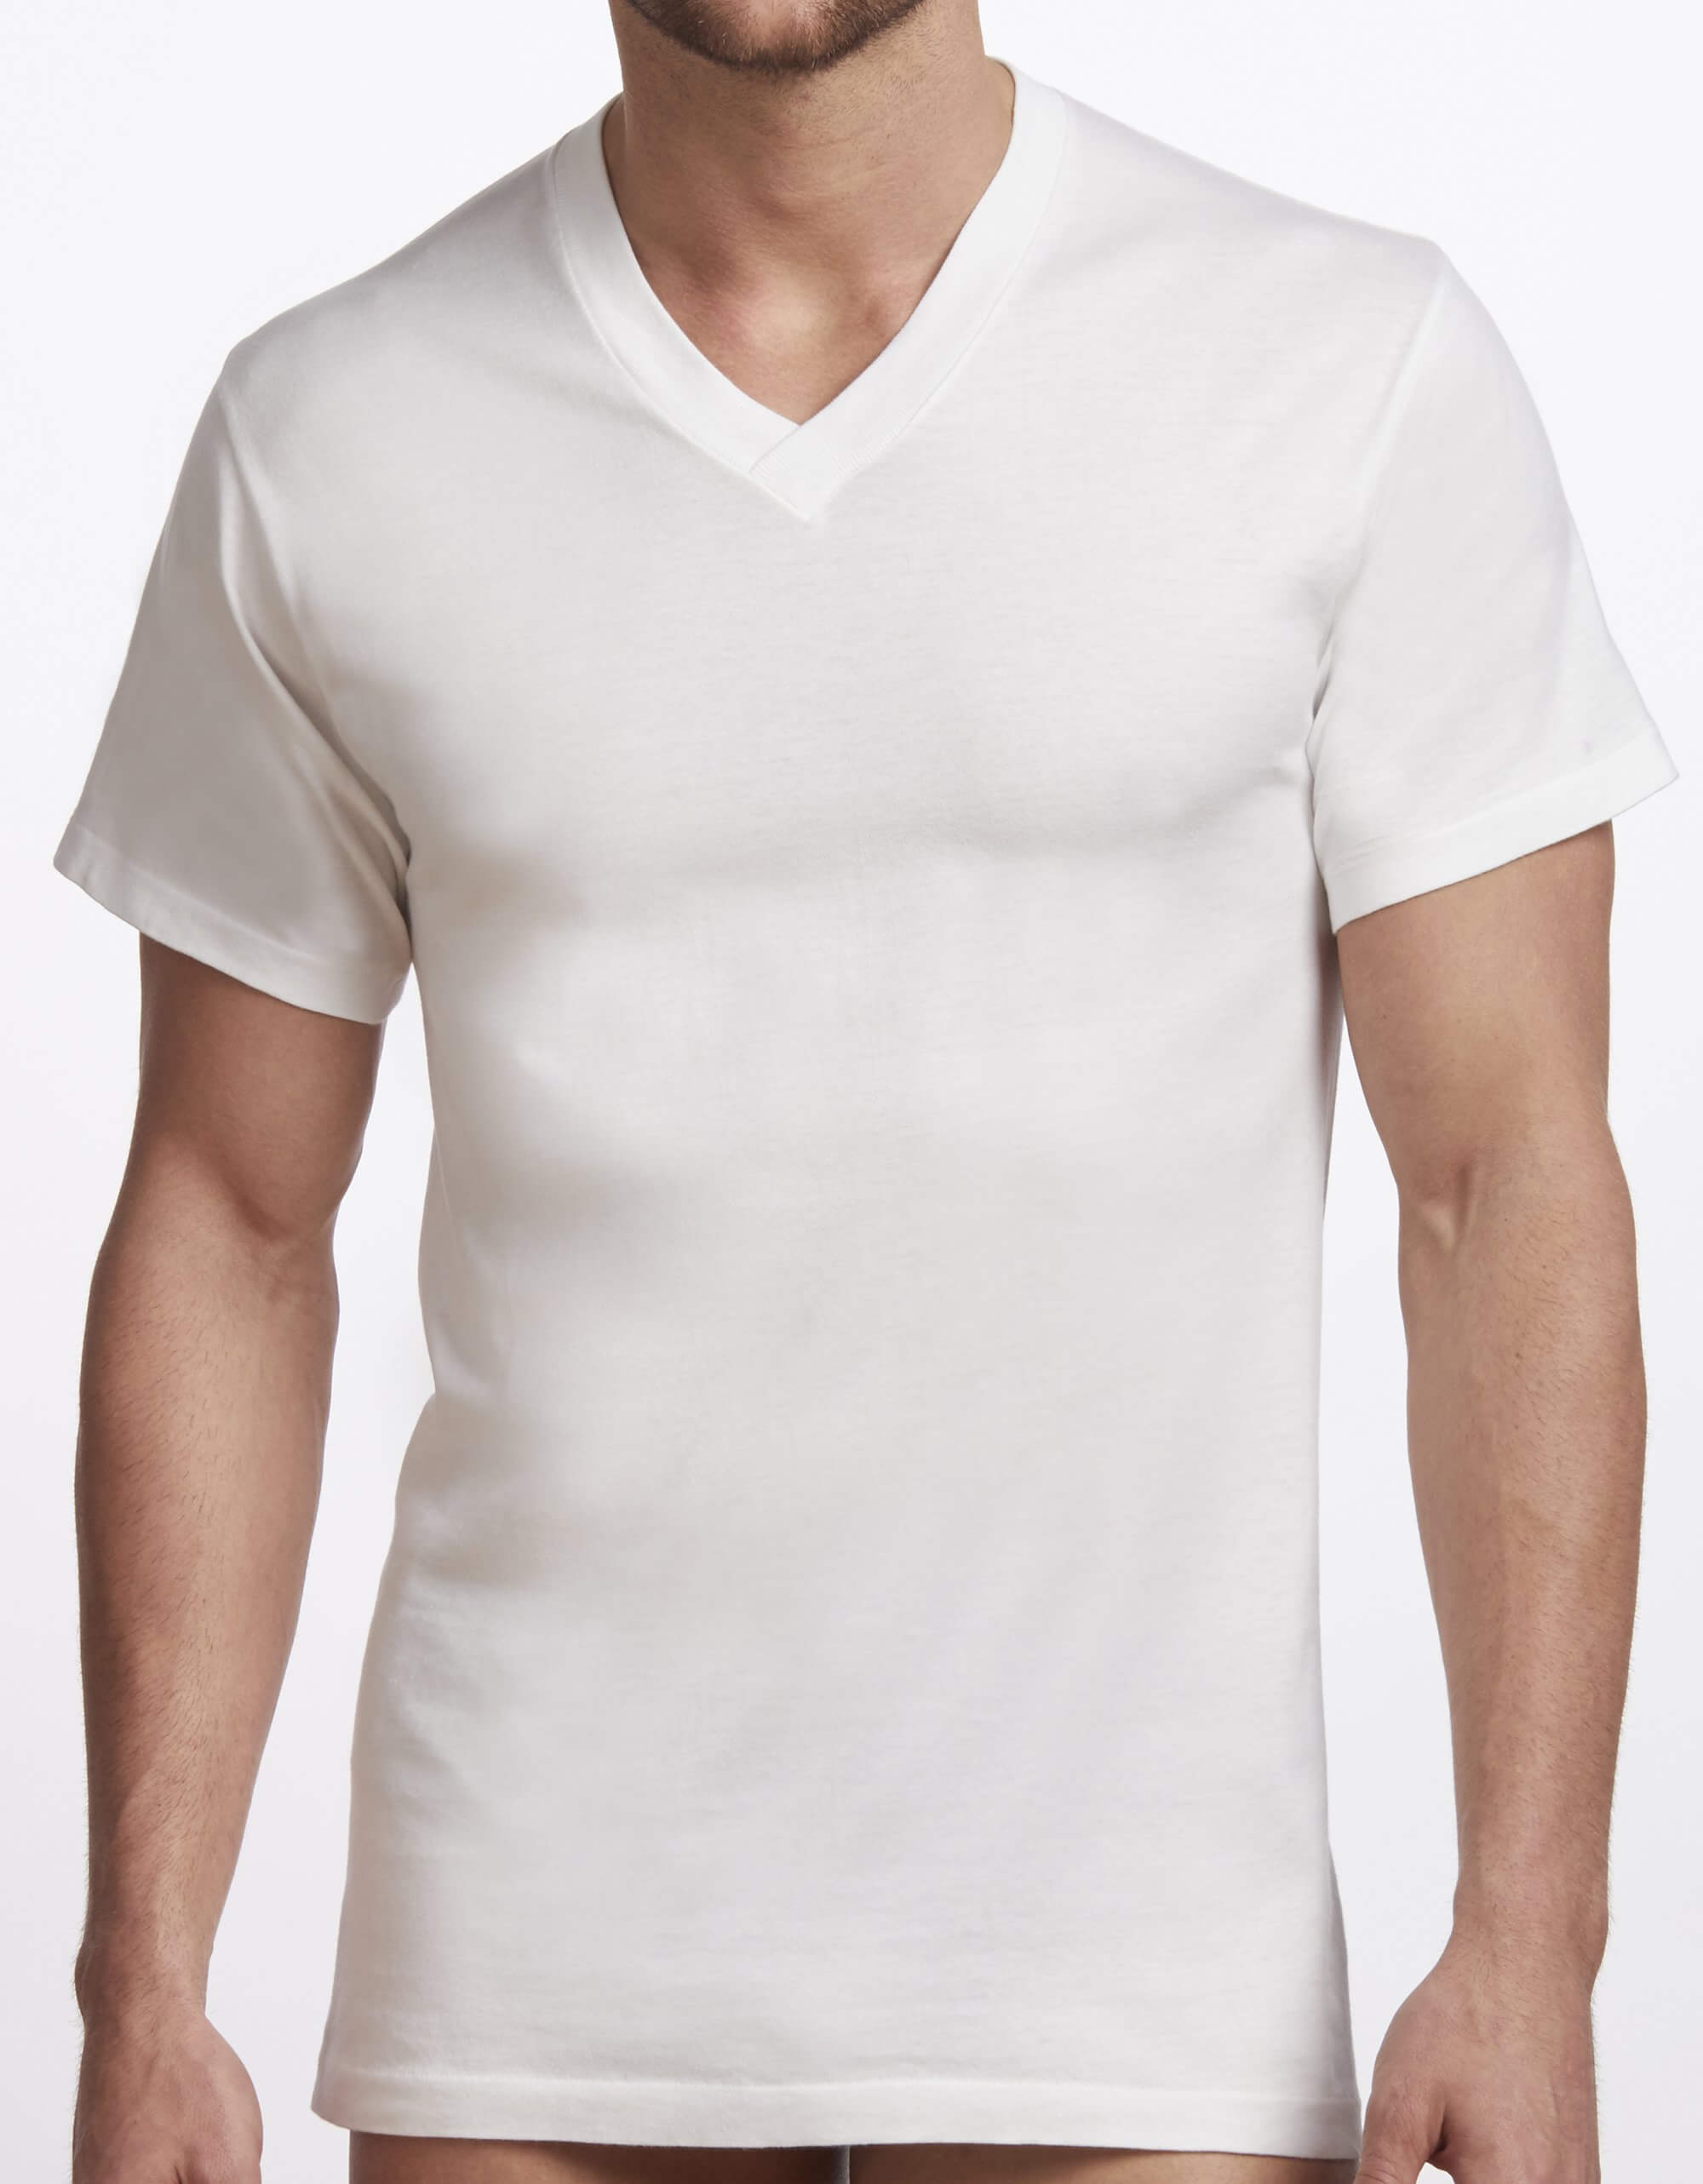 Men's Crew Neck T-Shirt Premium Collection (Cotton 2 Pack)